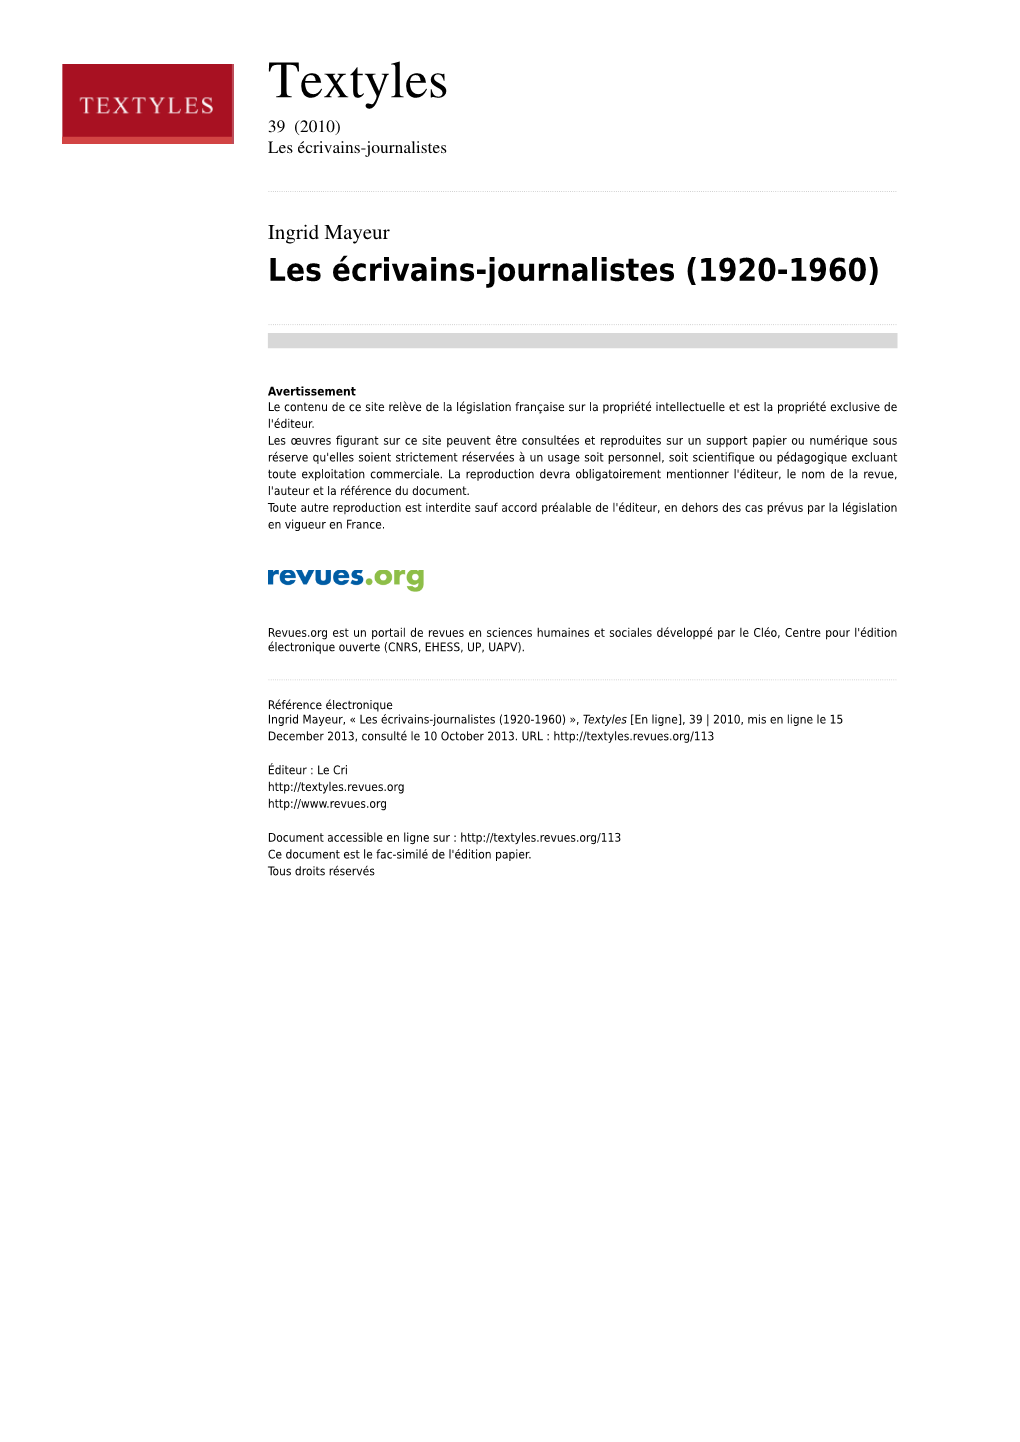 Les Écrivains-Journalistes (1920-1960)